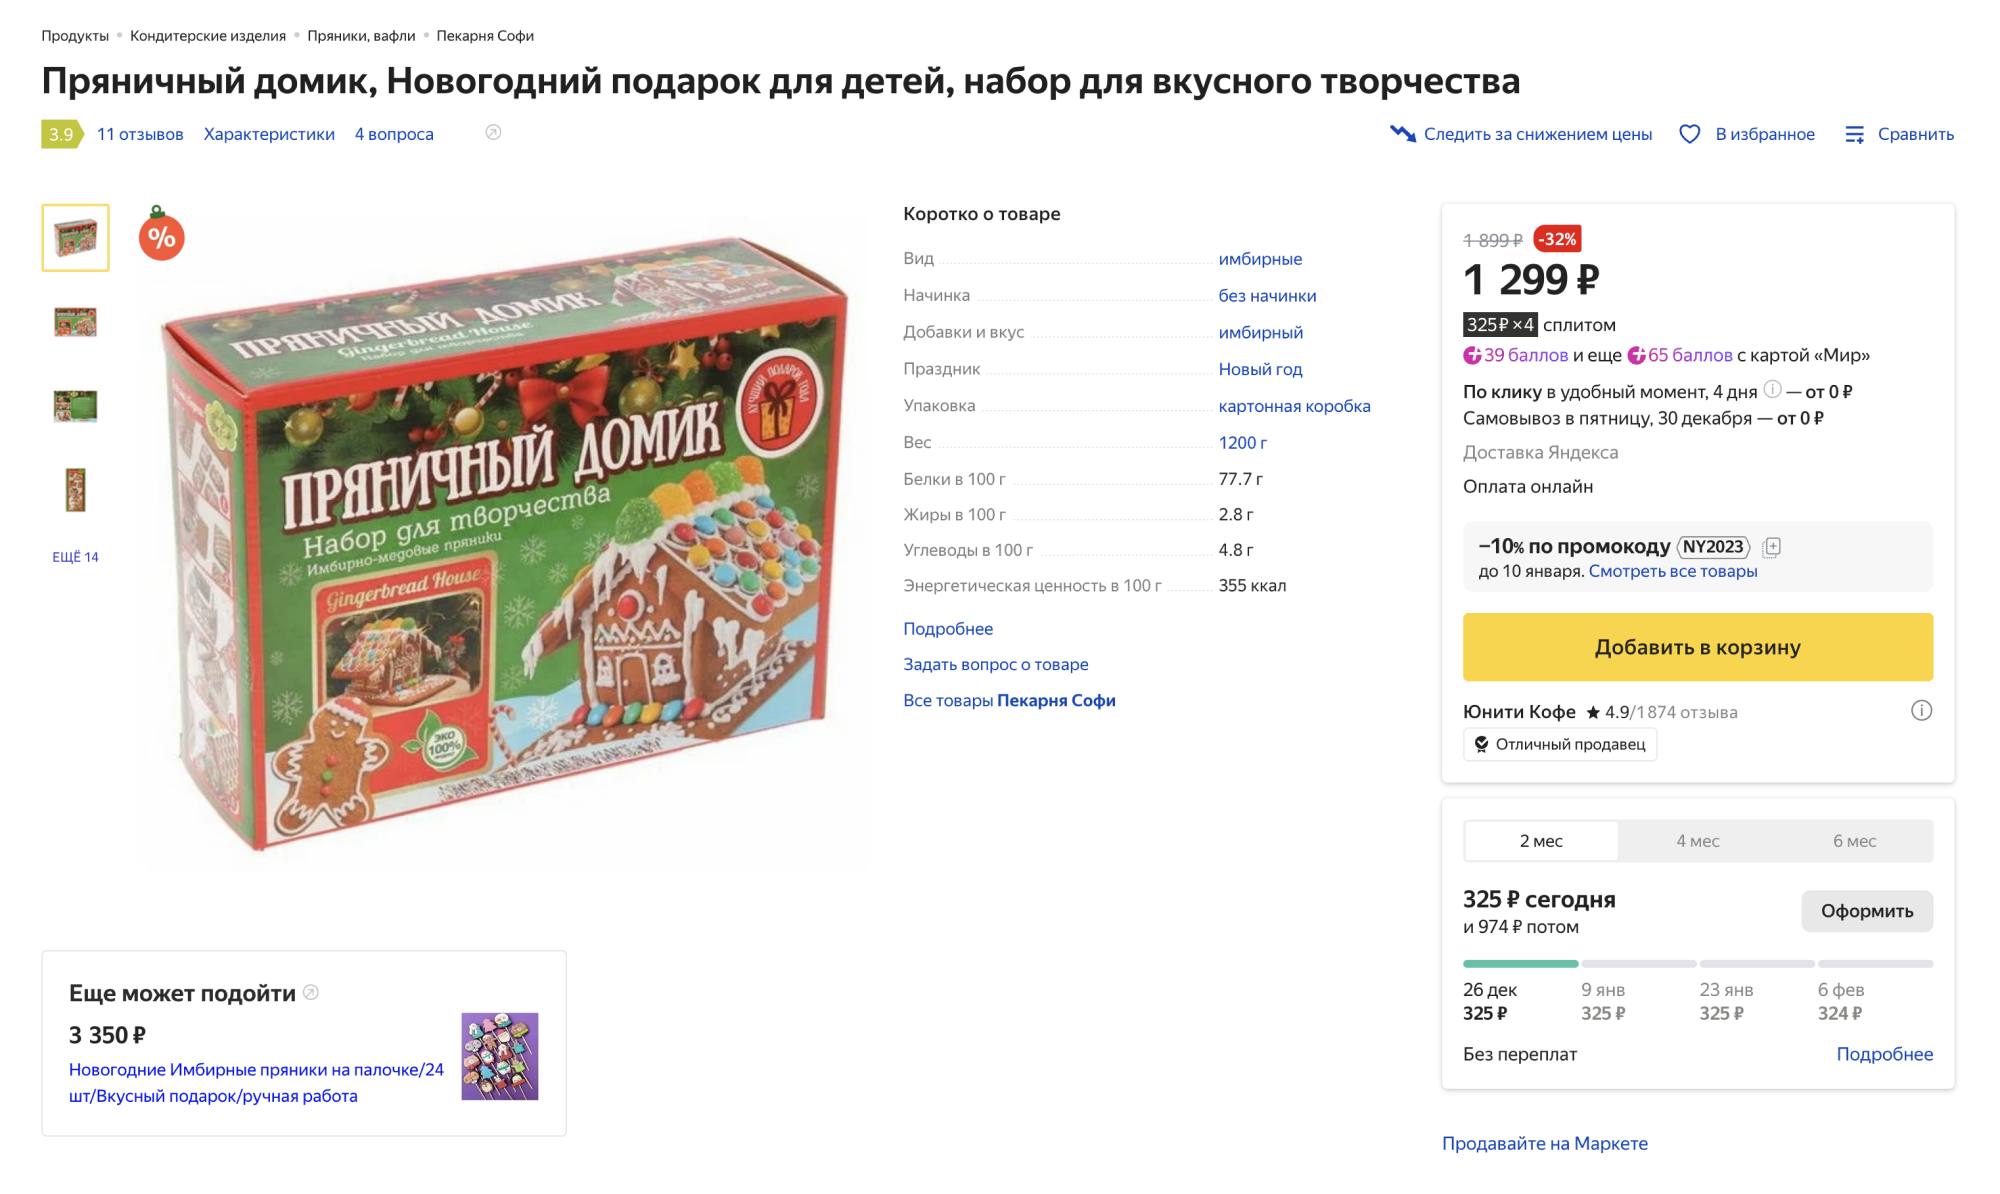 Если у вас нет времени, можно купить набор для печенья со всеми необходимыми ингредиентами, формами и декором. Источник: market.yandex.ru